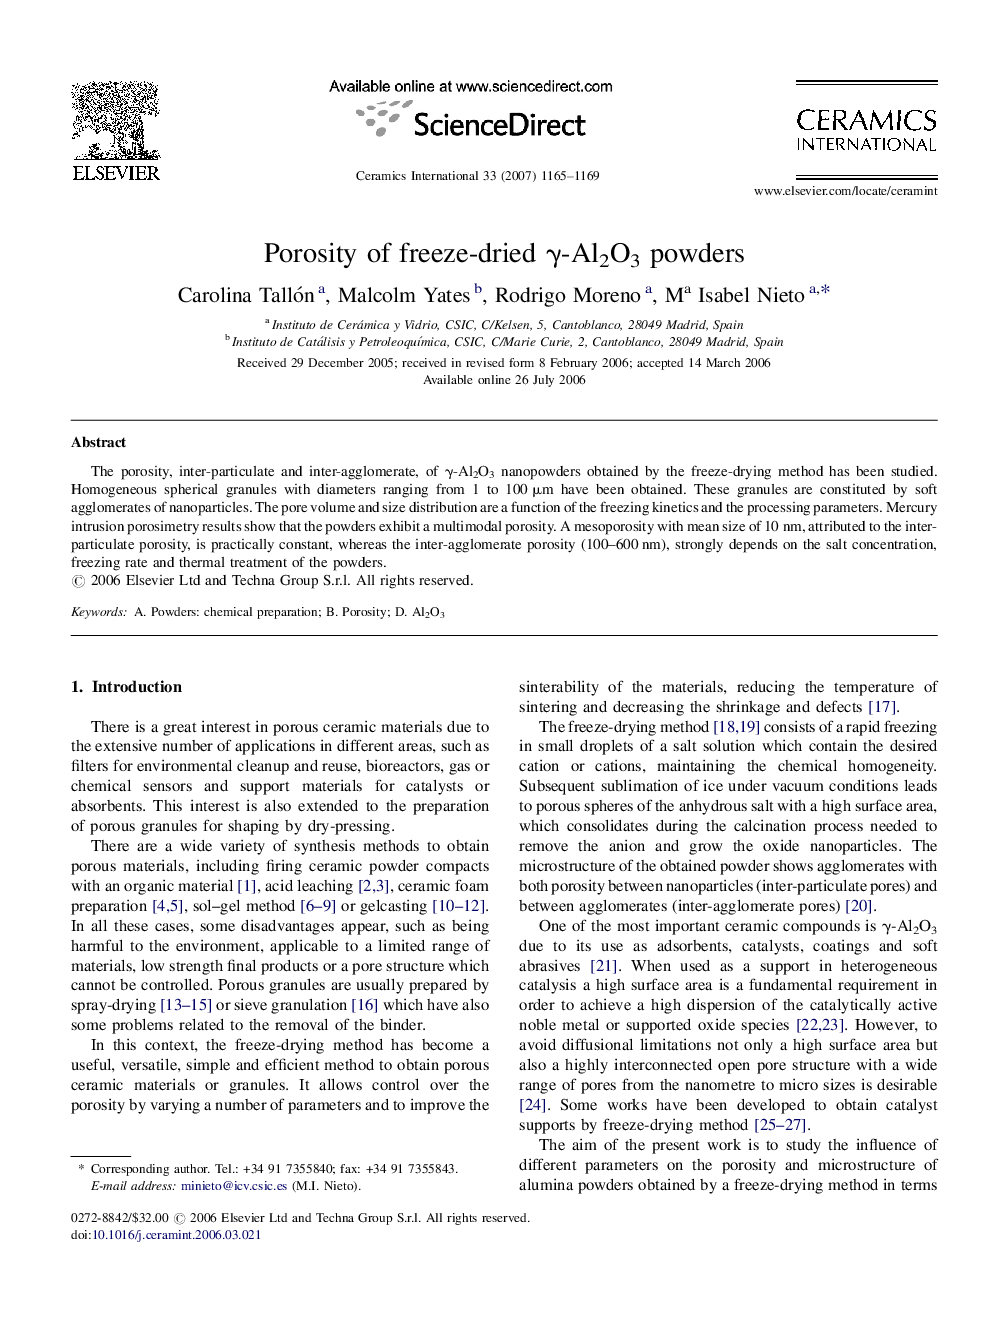 Porosity of freeze-dried γ-Al2O3 powders